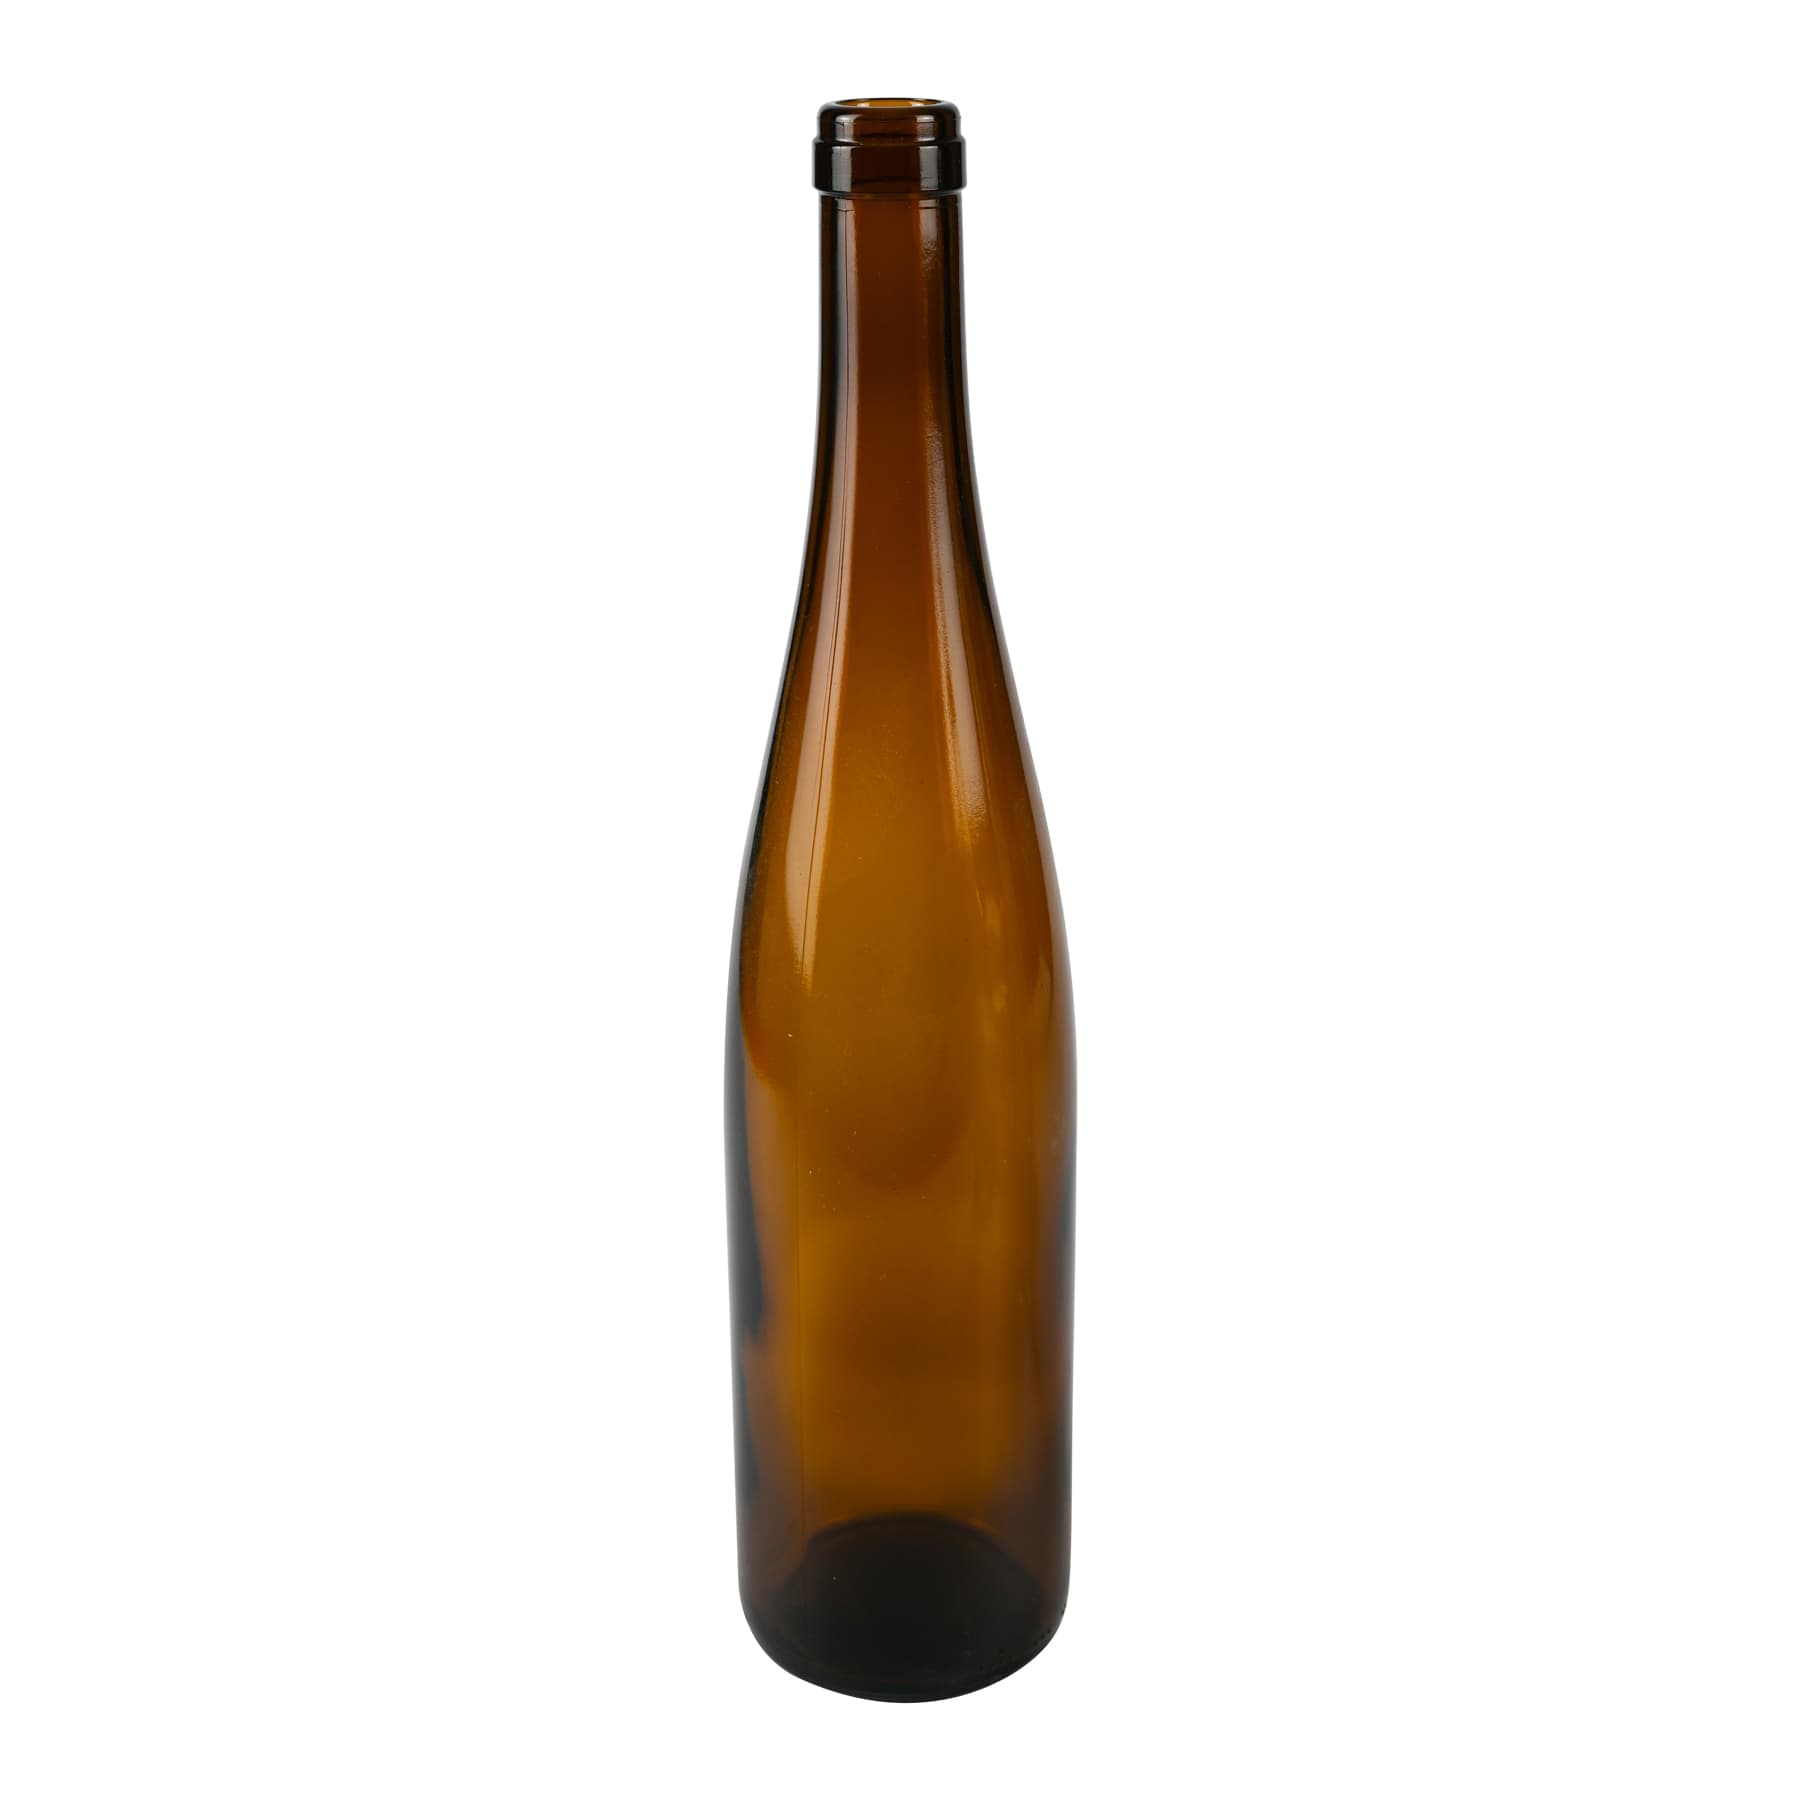 Weinflasche 0,75 l Schlegel 330 mm hoch braun, Mündung f. Kork